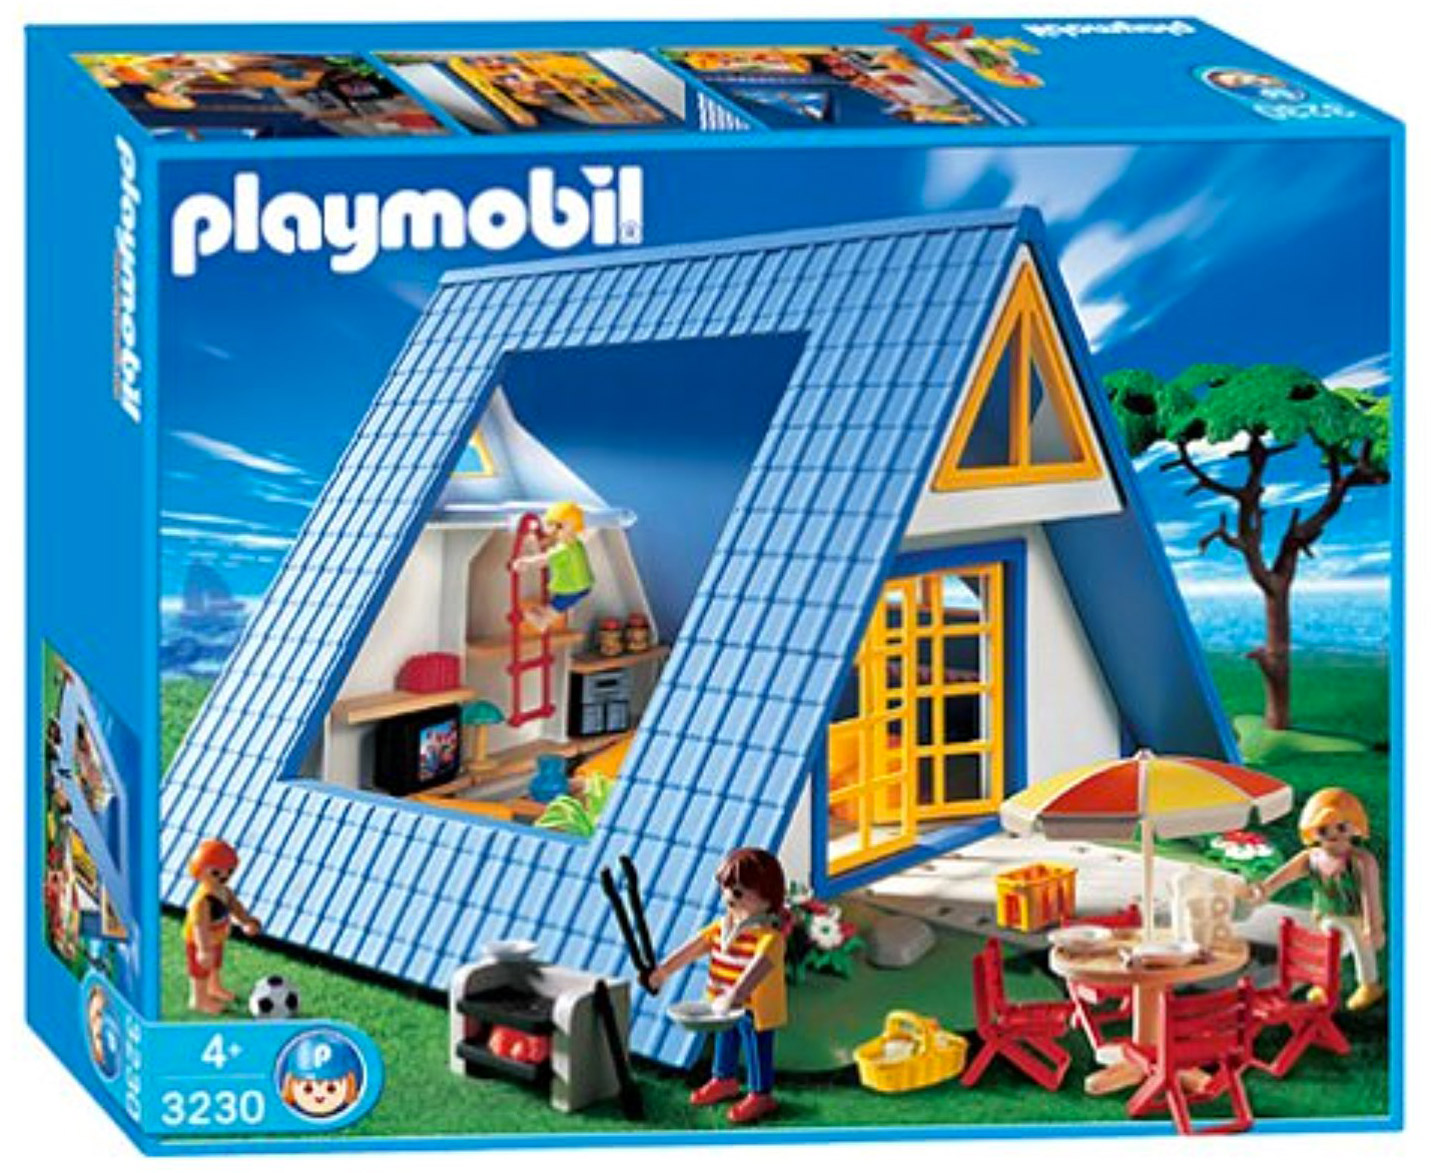 Playmobil Summer Fun 3230 pas cher, Famille / Maison de vacances